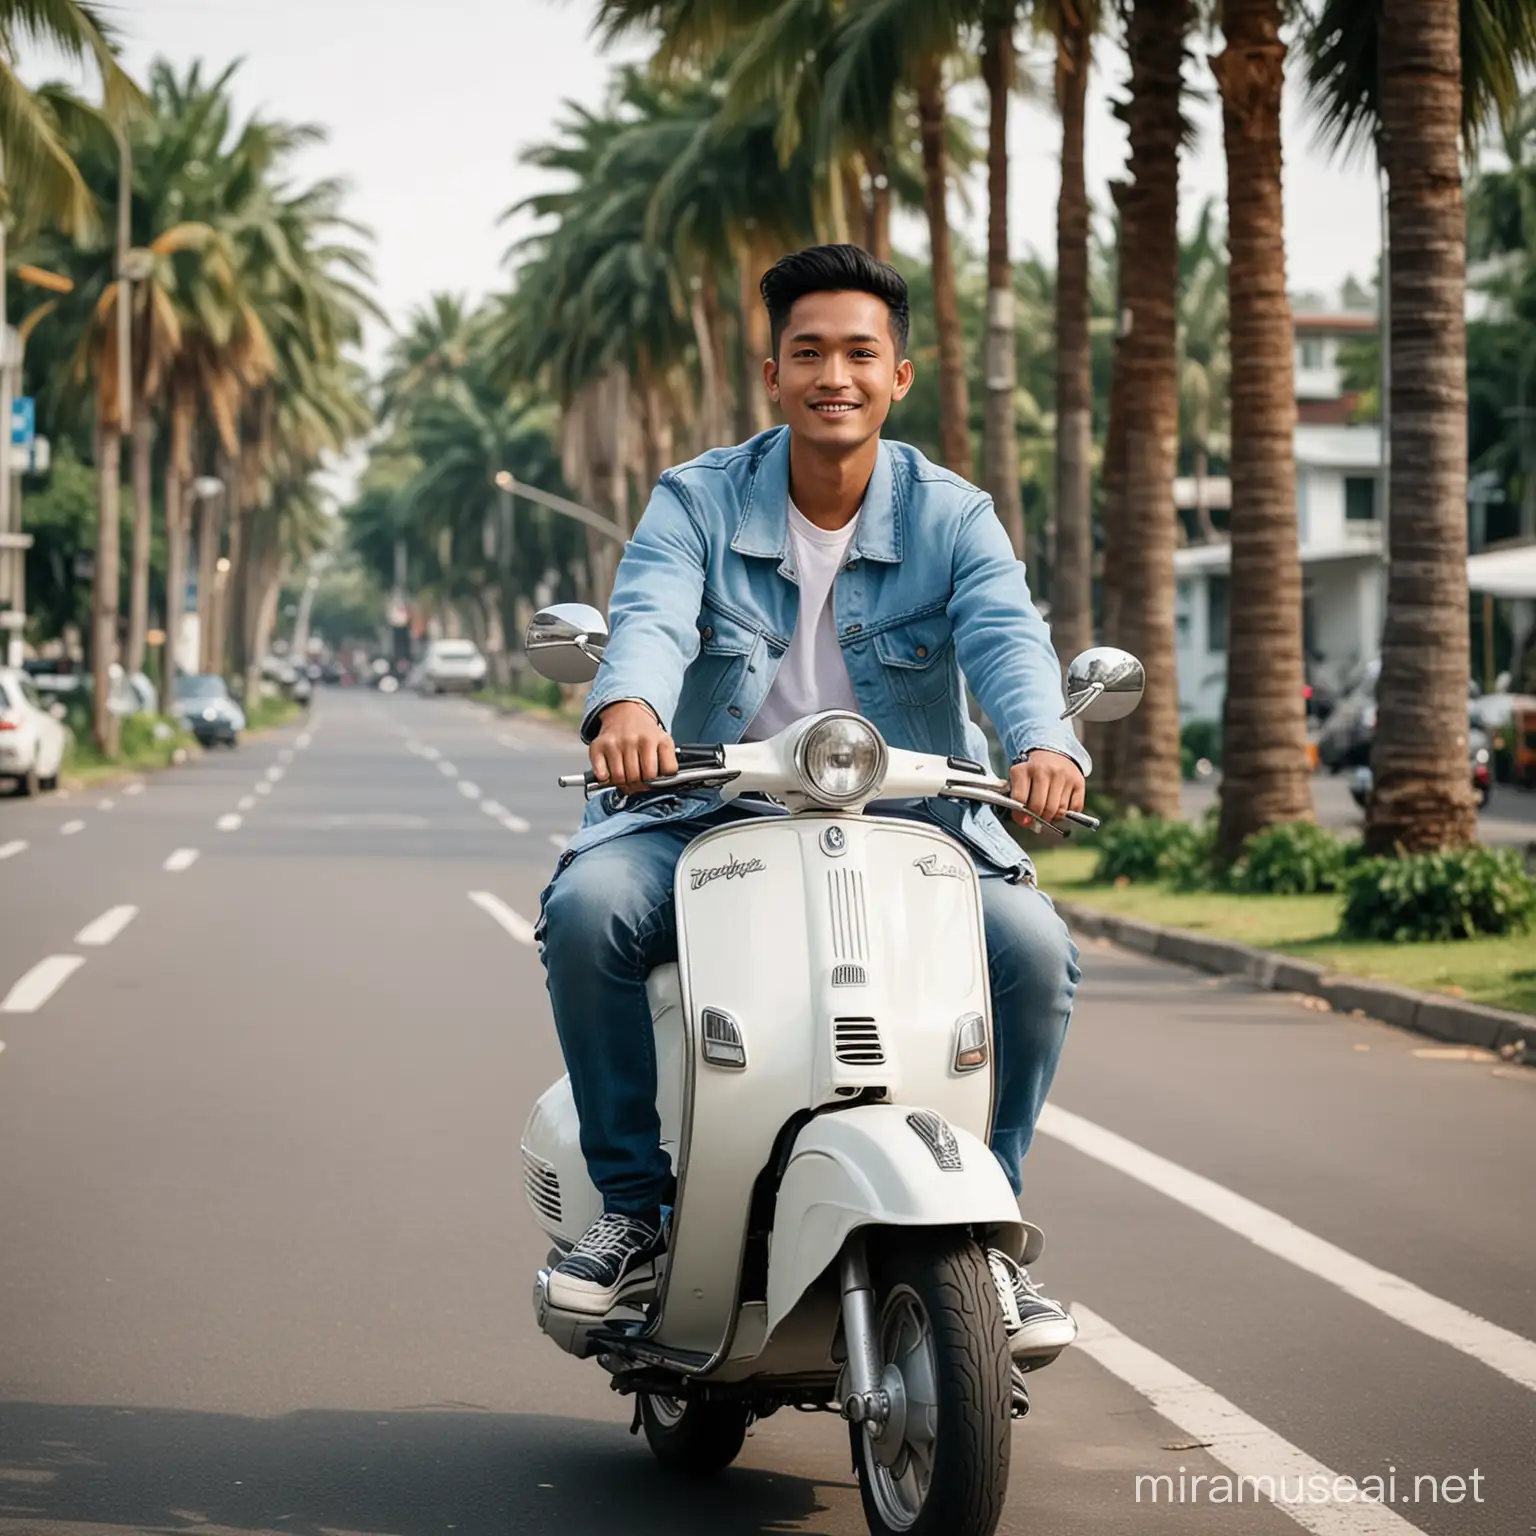 Foto pria indonesia umur 25 tahun,baju kaos putih dan jaket biru,celana jeans sedang mengendarai vespa clasik warna putih,posisi menghadap kamera,lokasi jalanan kota yang bersih ada pohon palm di pinngir jalan,pose setengah badan